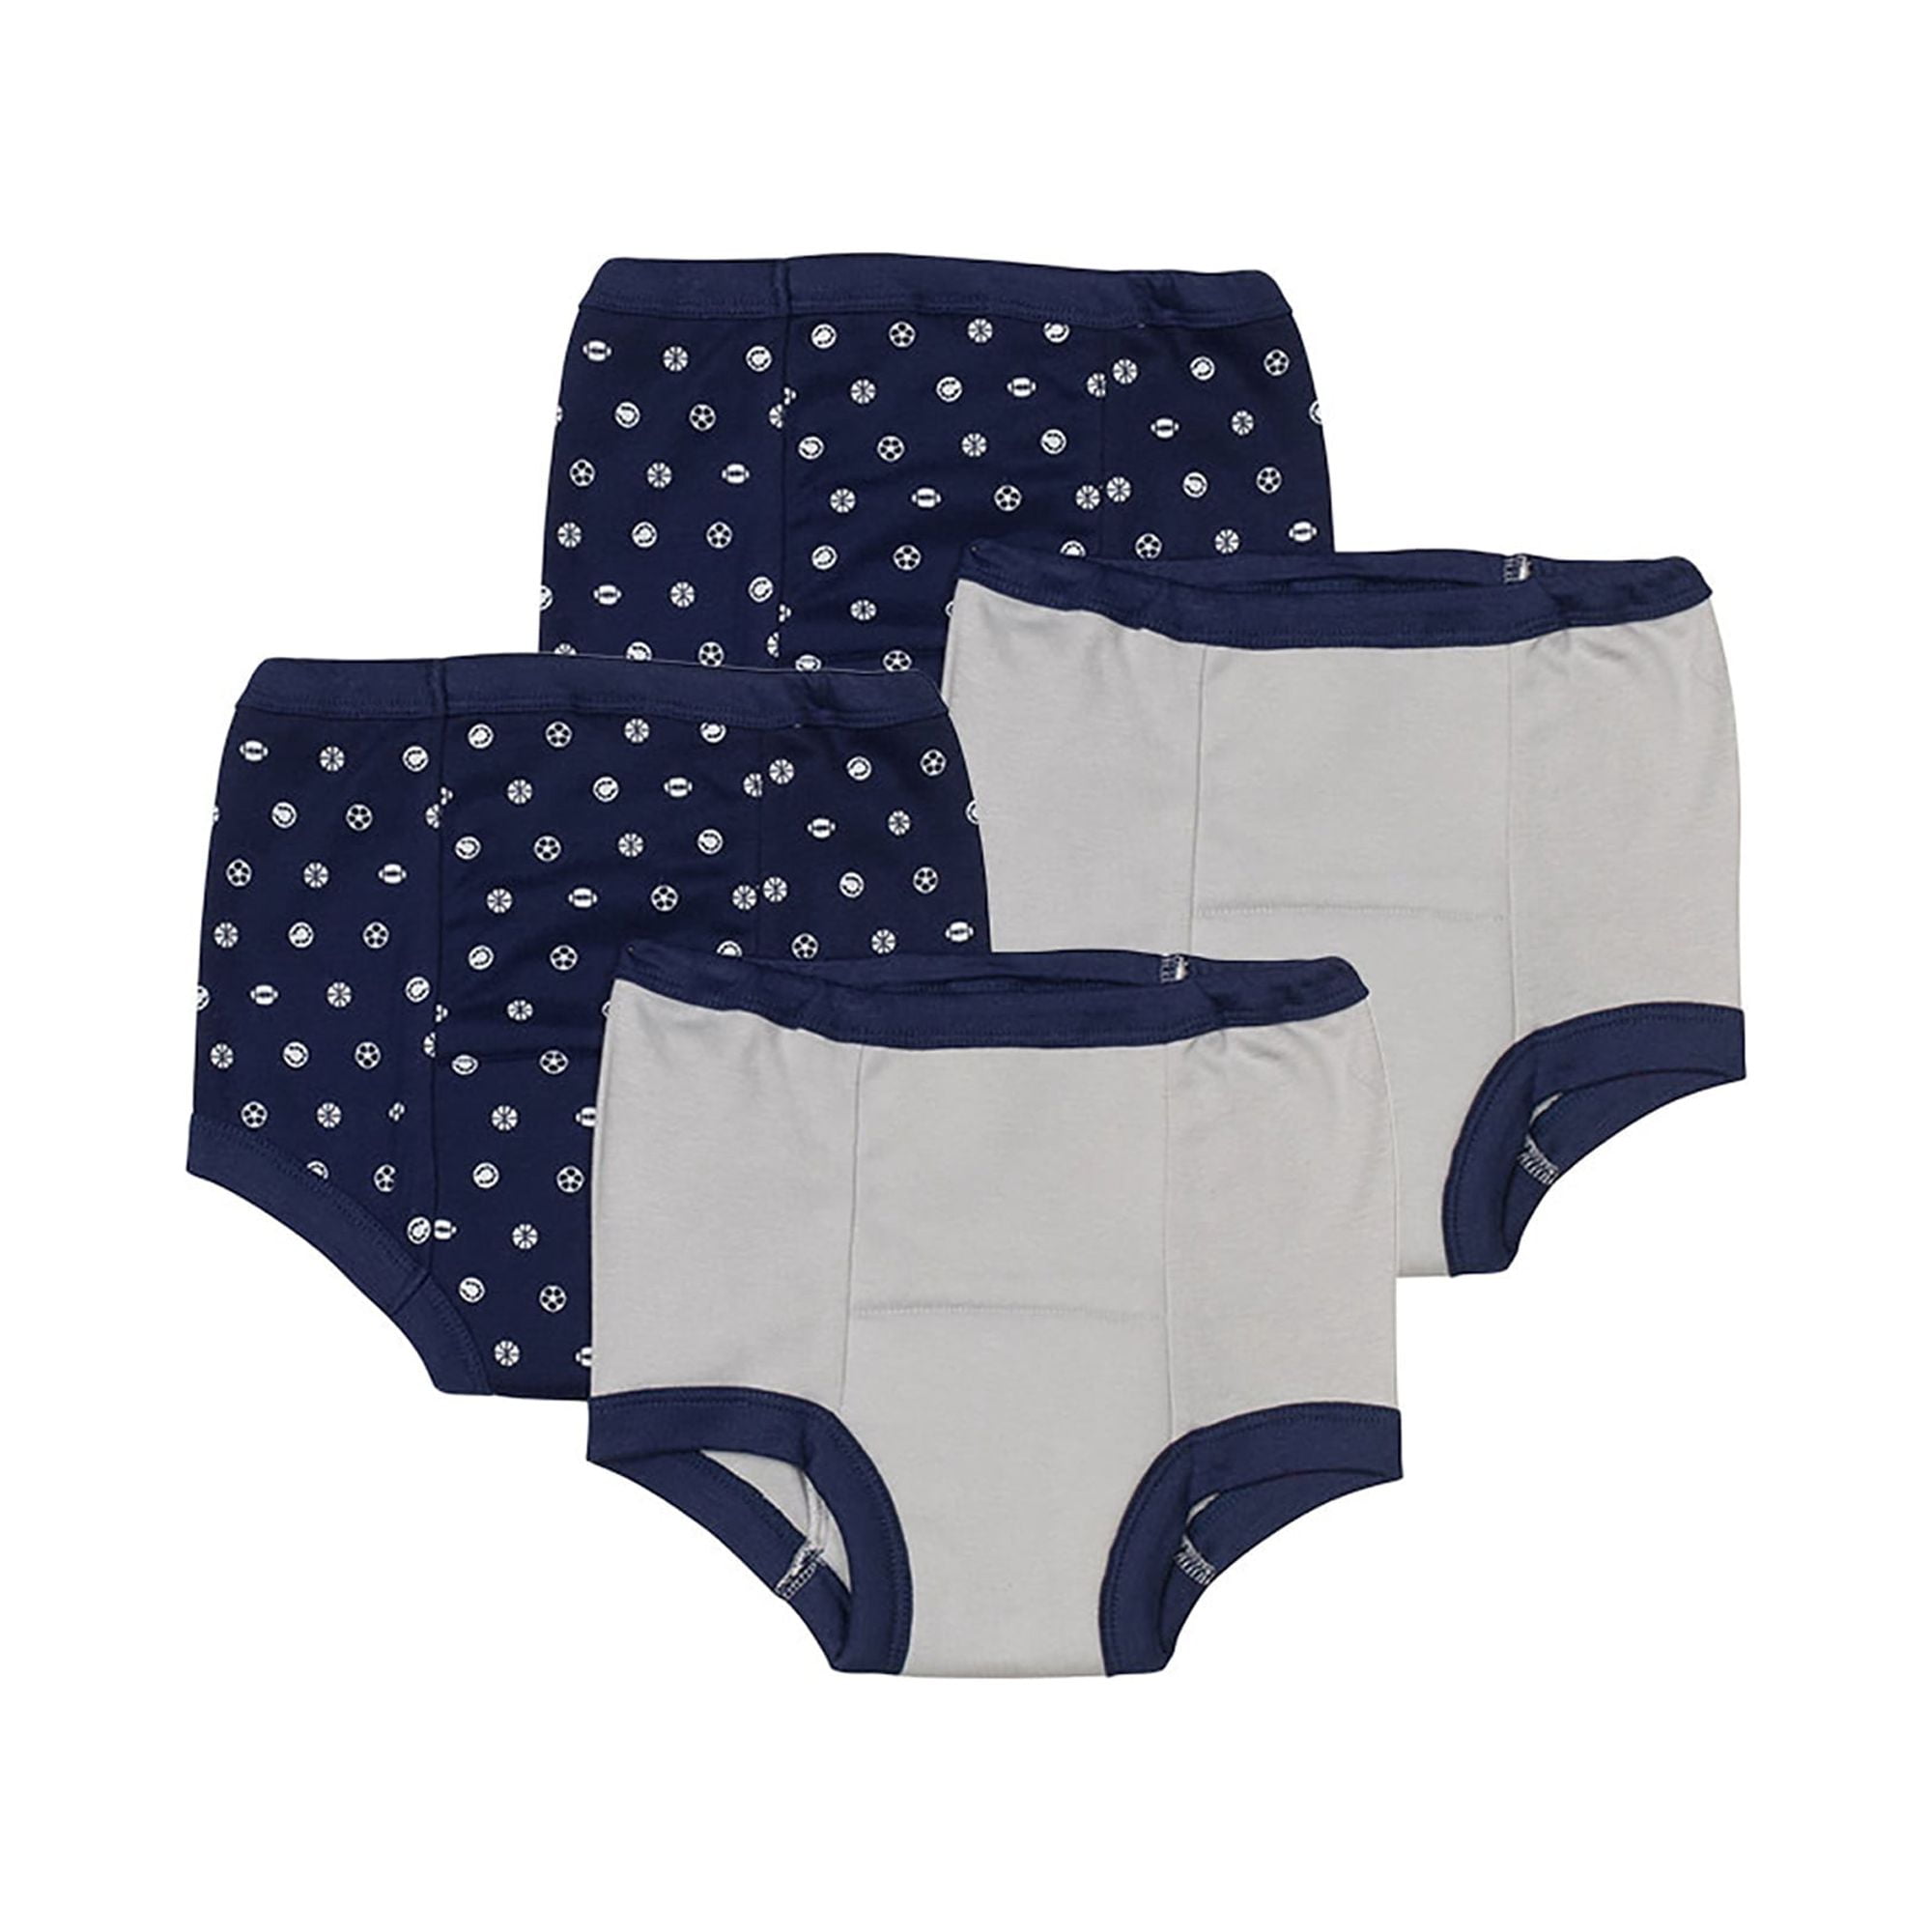  Gerber Baby Girls Toddler Multi-Pack Premium Pants